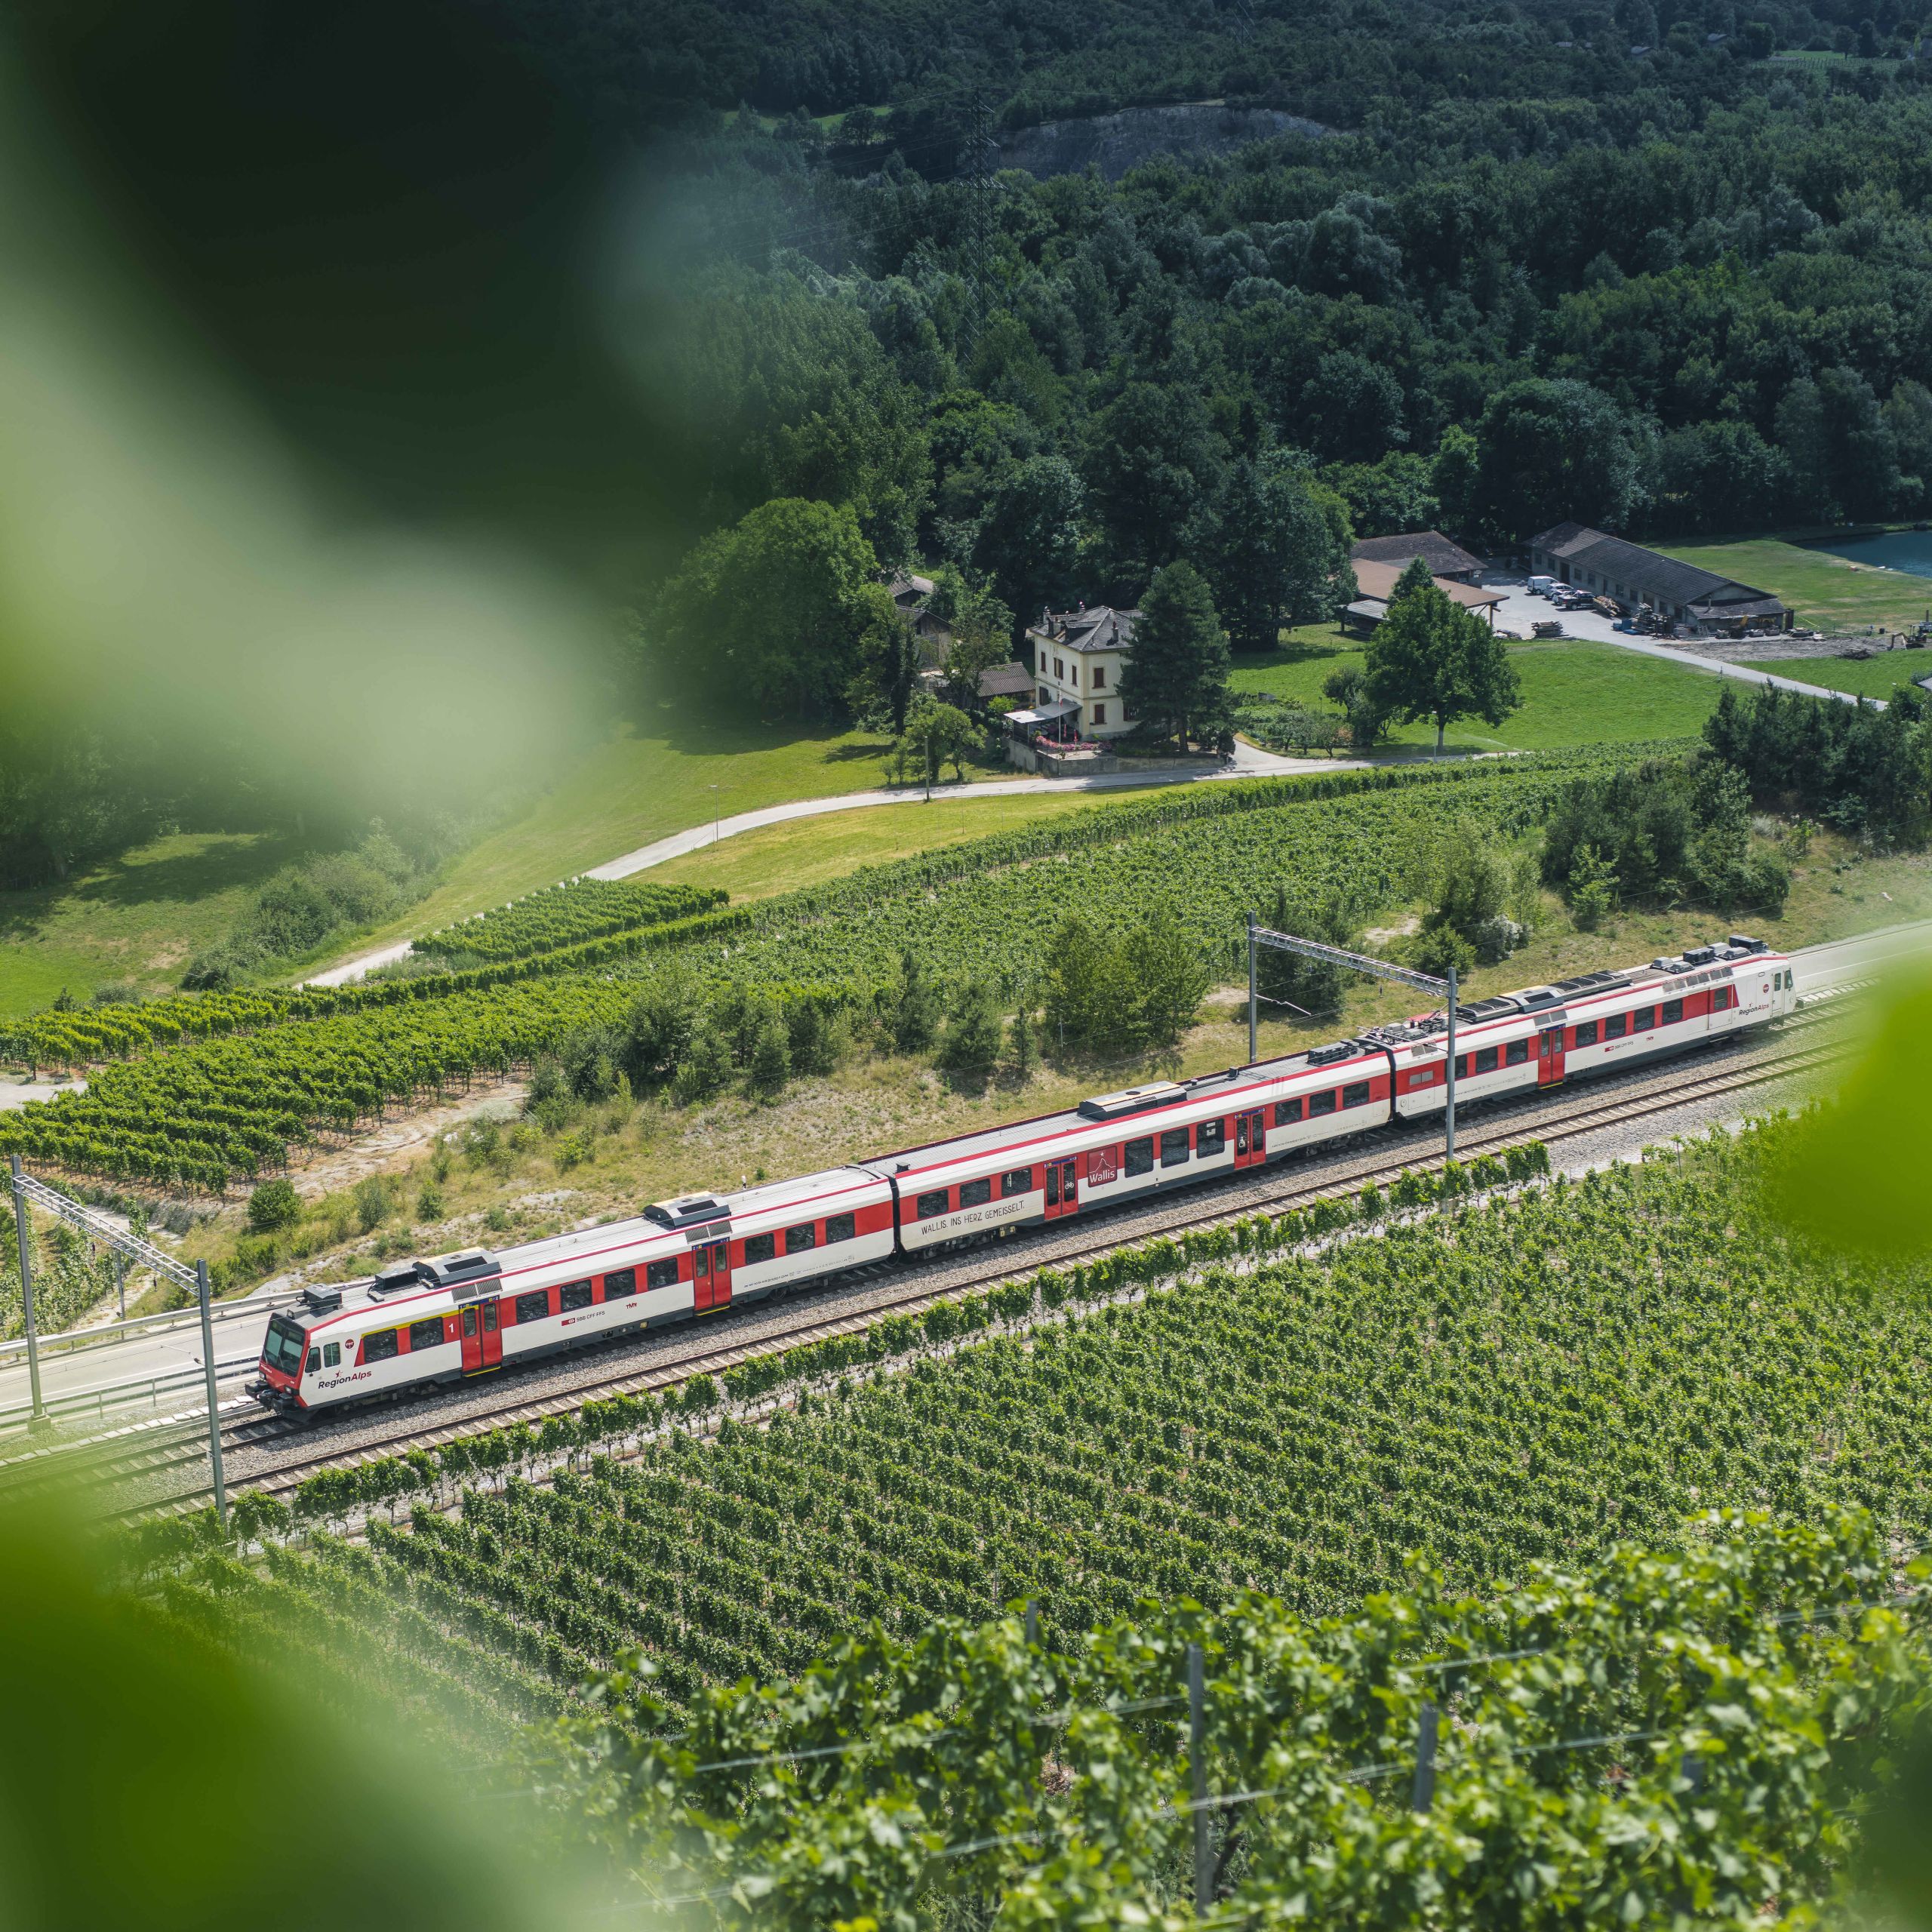 Valais regional train in the vineyards of Salquenen in the Sierre region, Valais, Switzerland